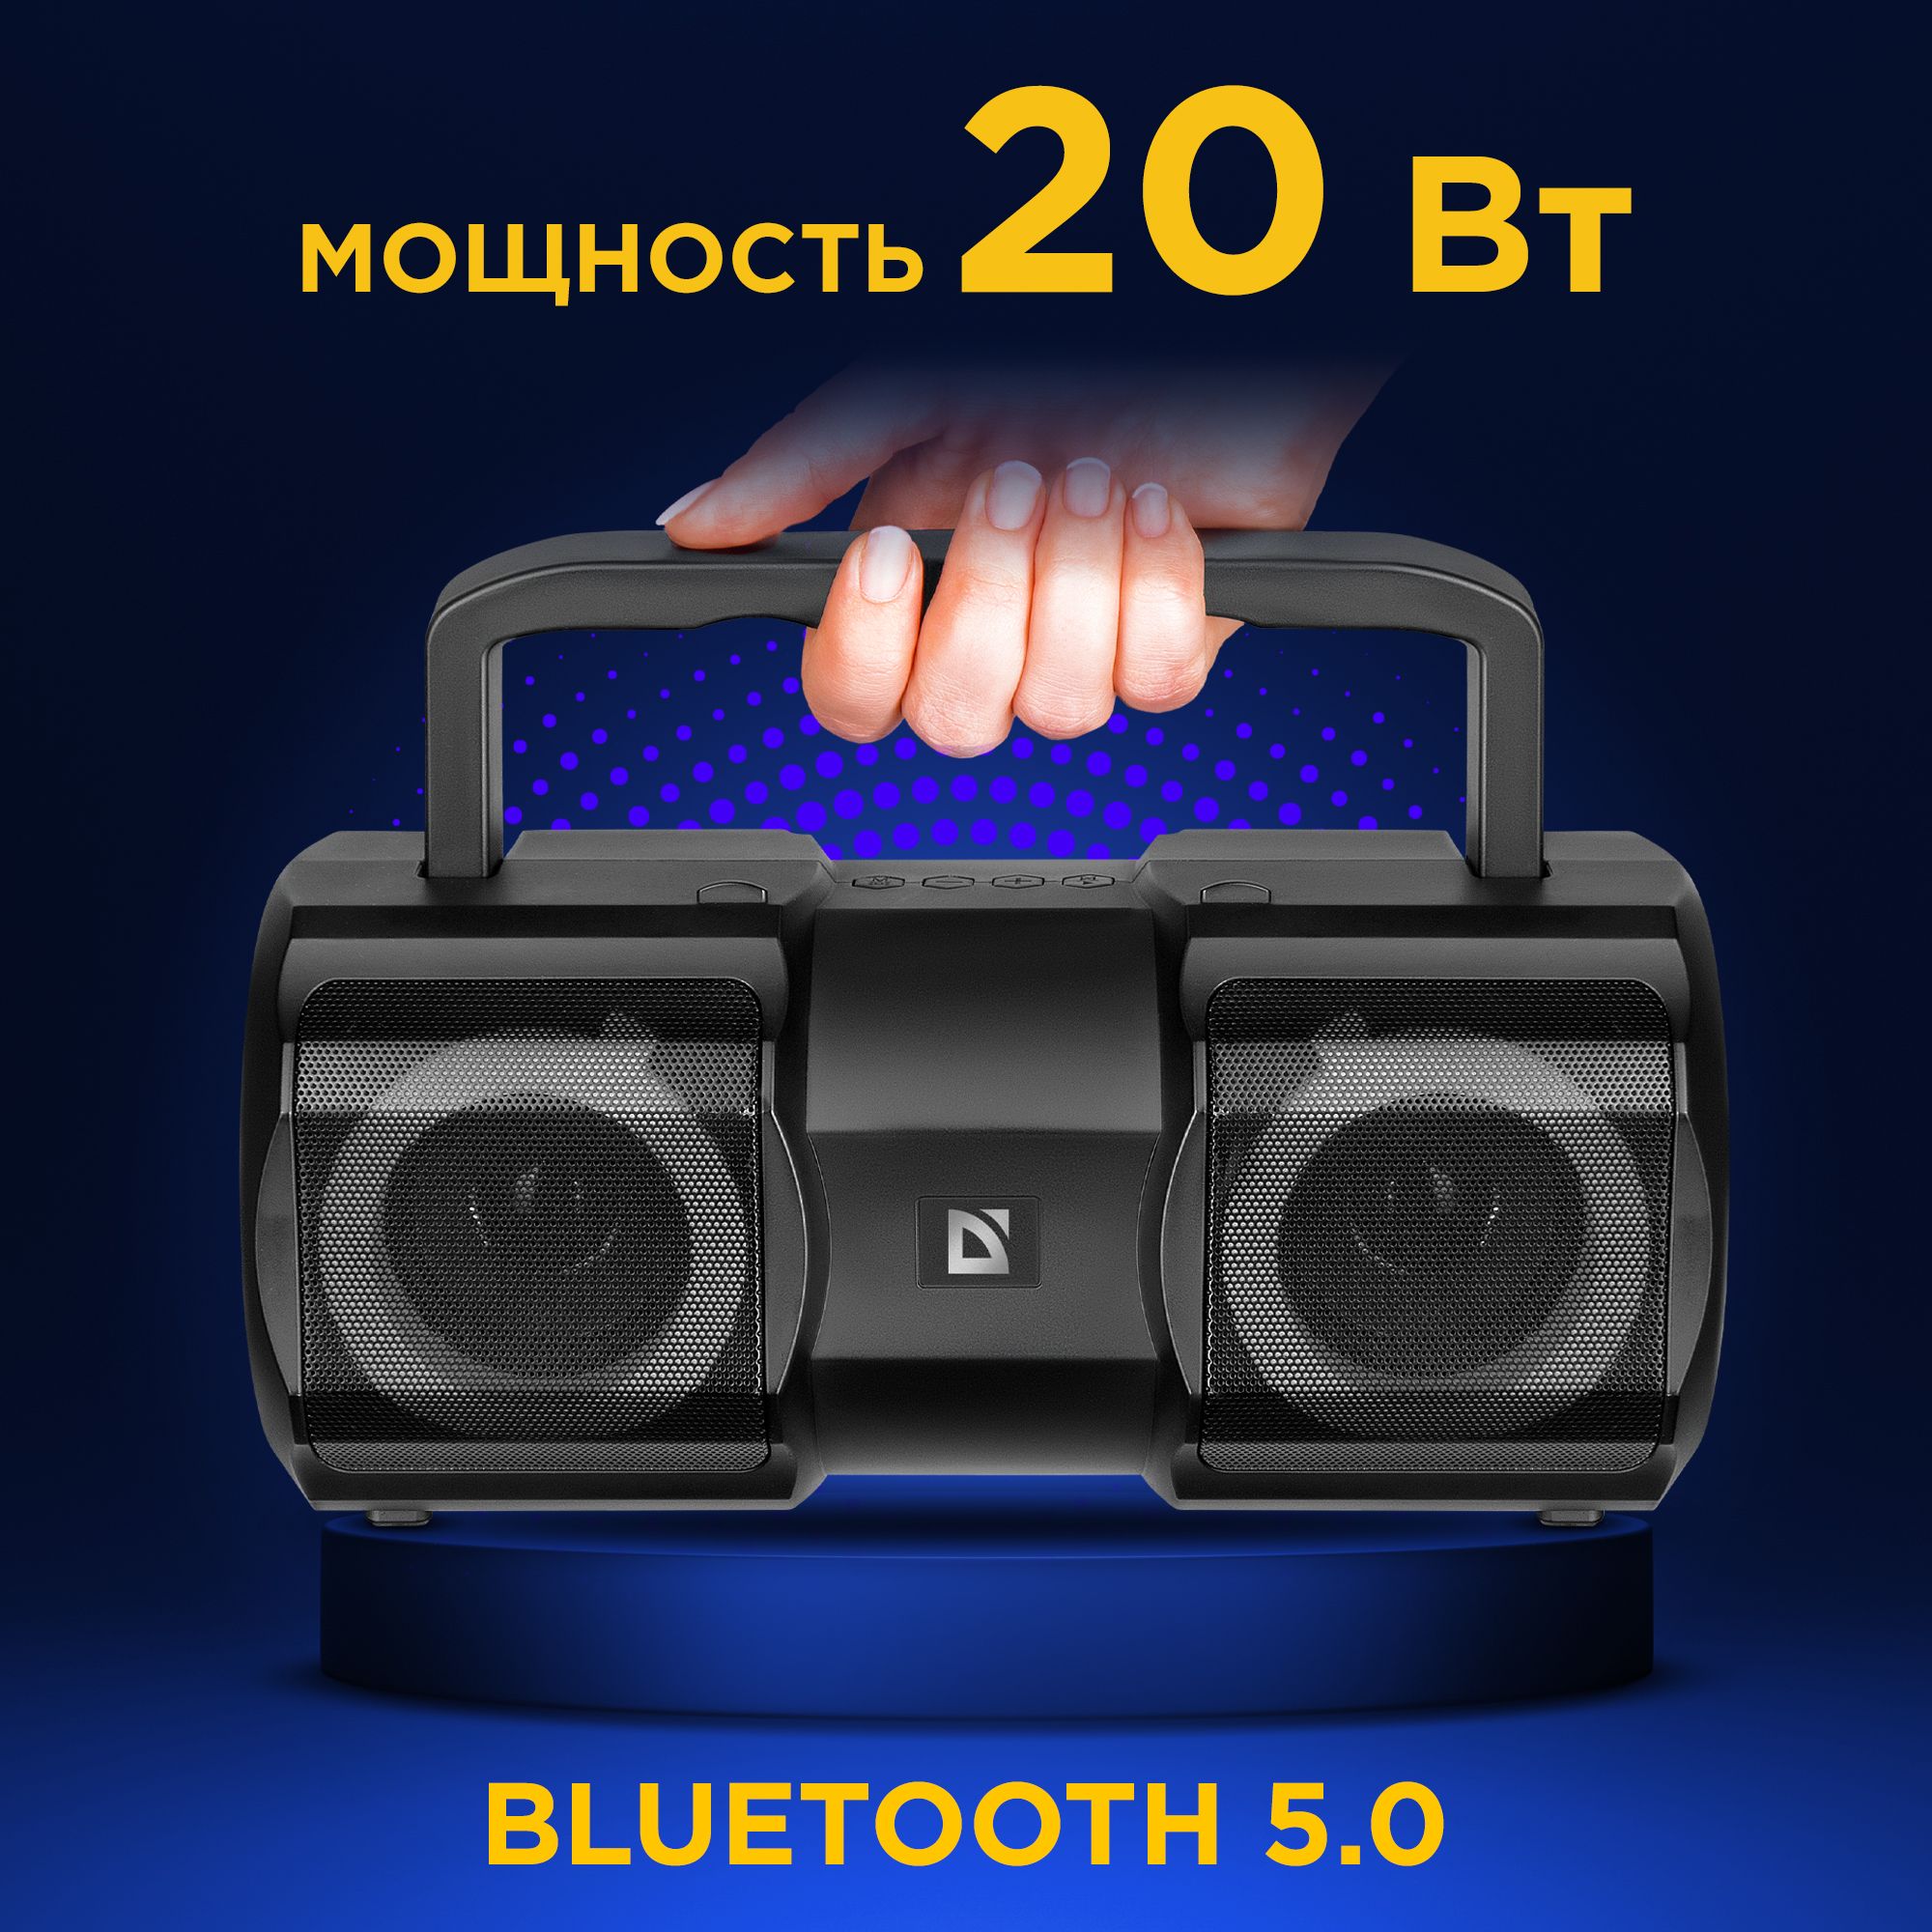 Defender beatbox 20. Портативная колонка Beatbox 20 20вт, Light/BT/Mic/fm/USB/TF Defender #65420. Блютуз колонка Дефендер. Колонка беспроводная Defender Beatbox 20. Beatbox 20 цвет черный мощность звука 20 Вт динамики.